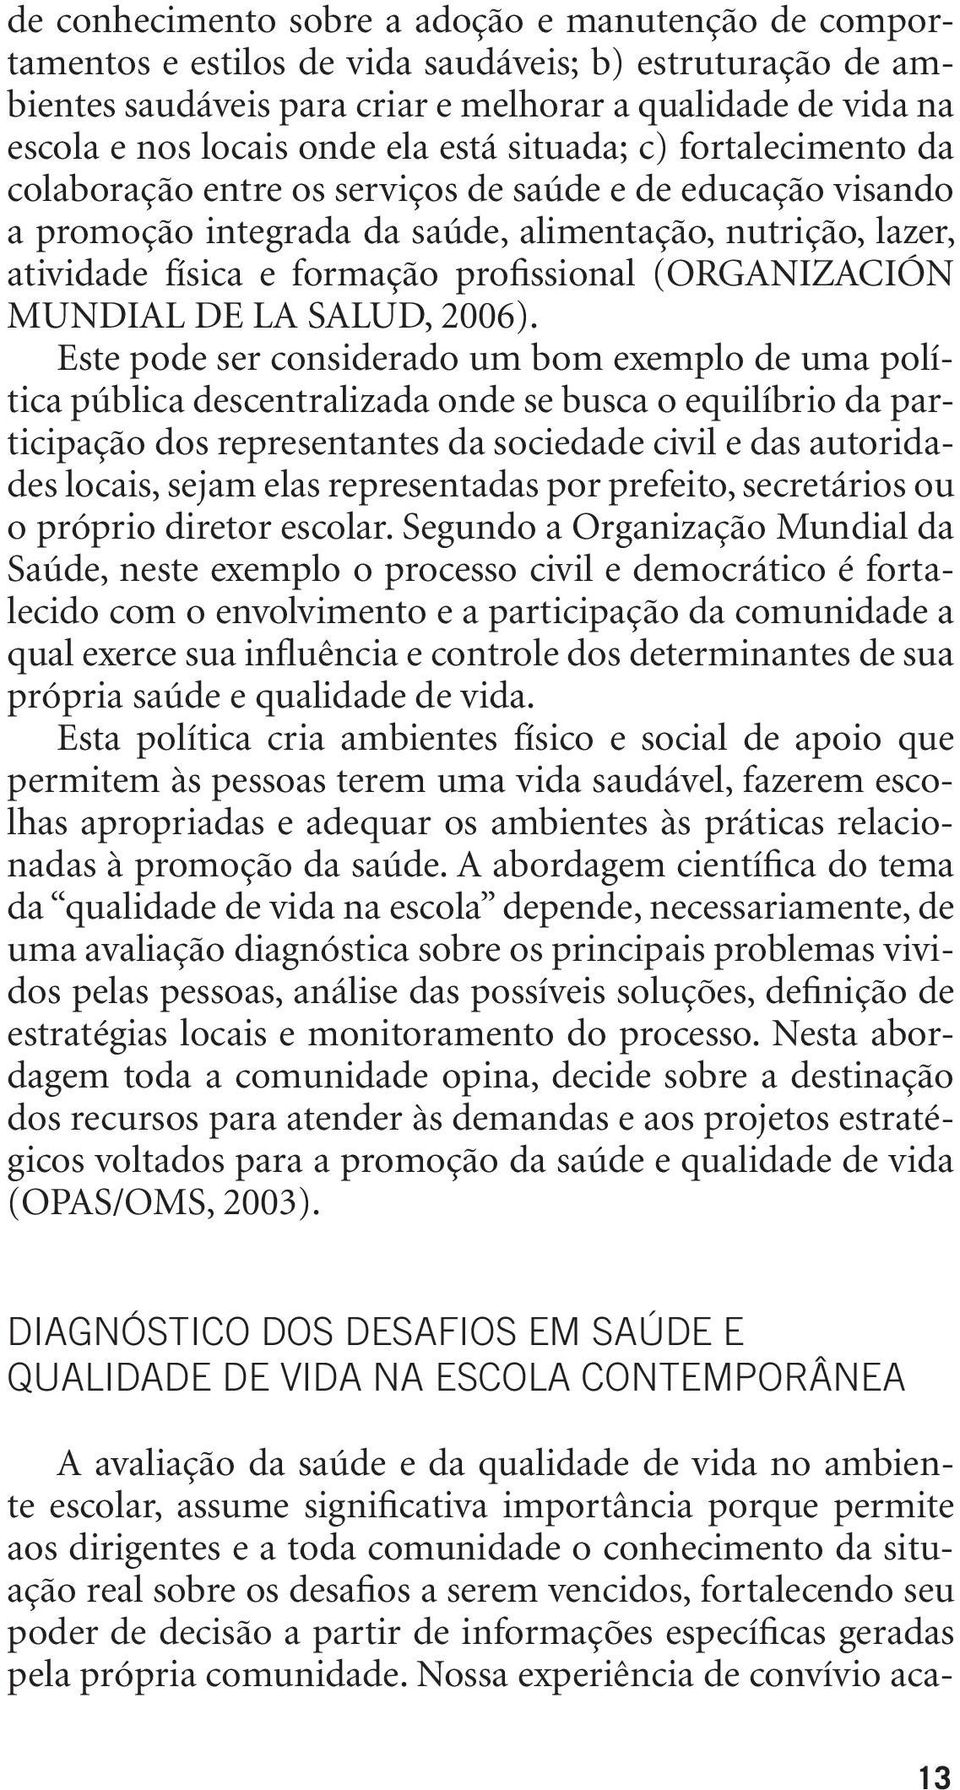 profissional (ORGANIZACIÓN MUNDIAL DE LA SALUD, 2006).